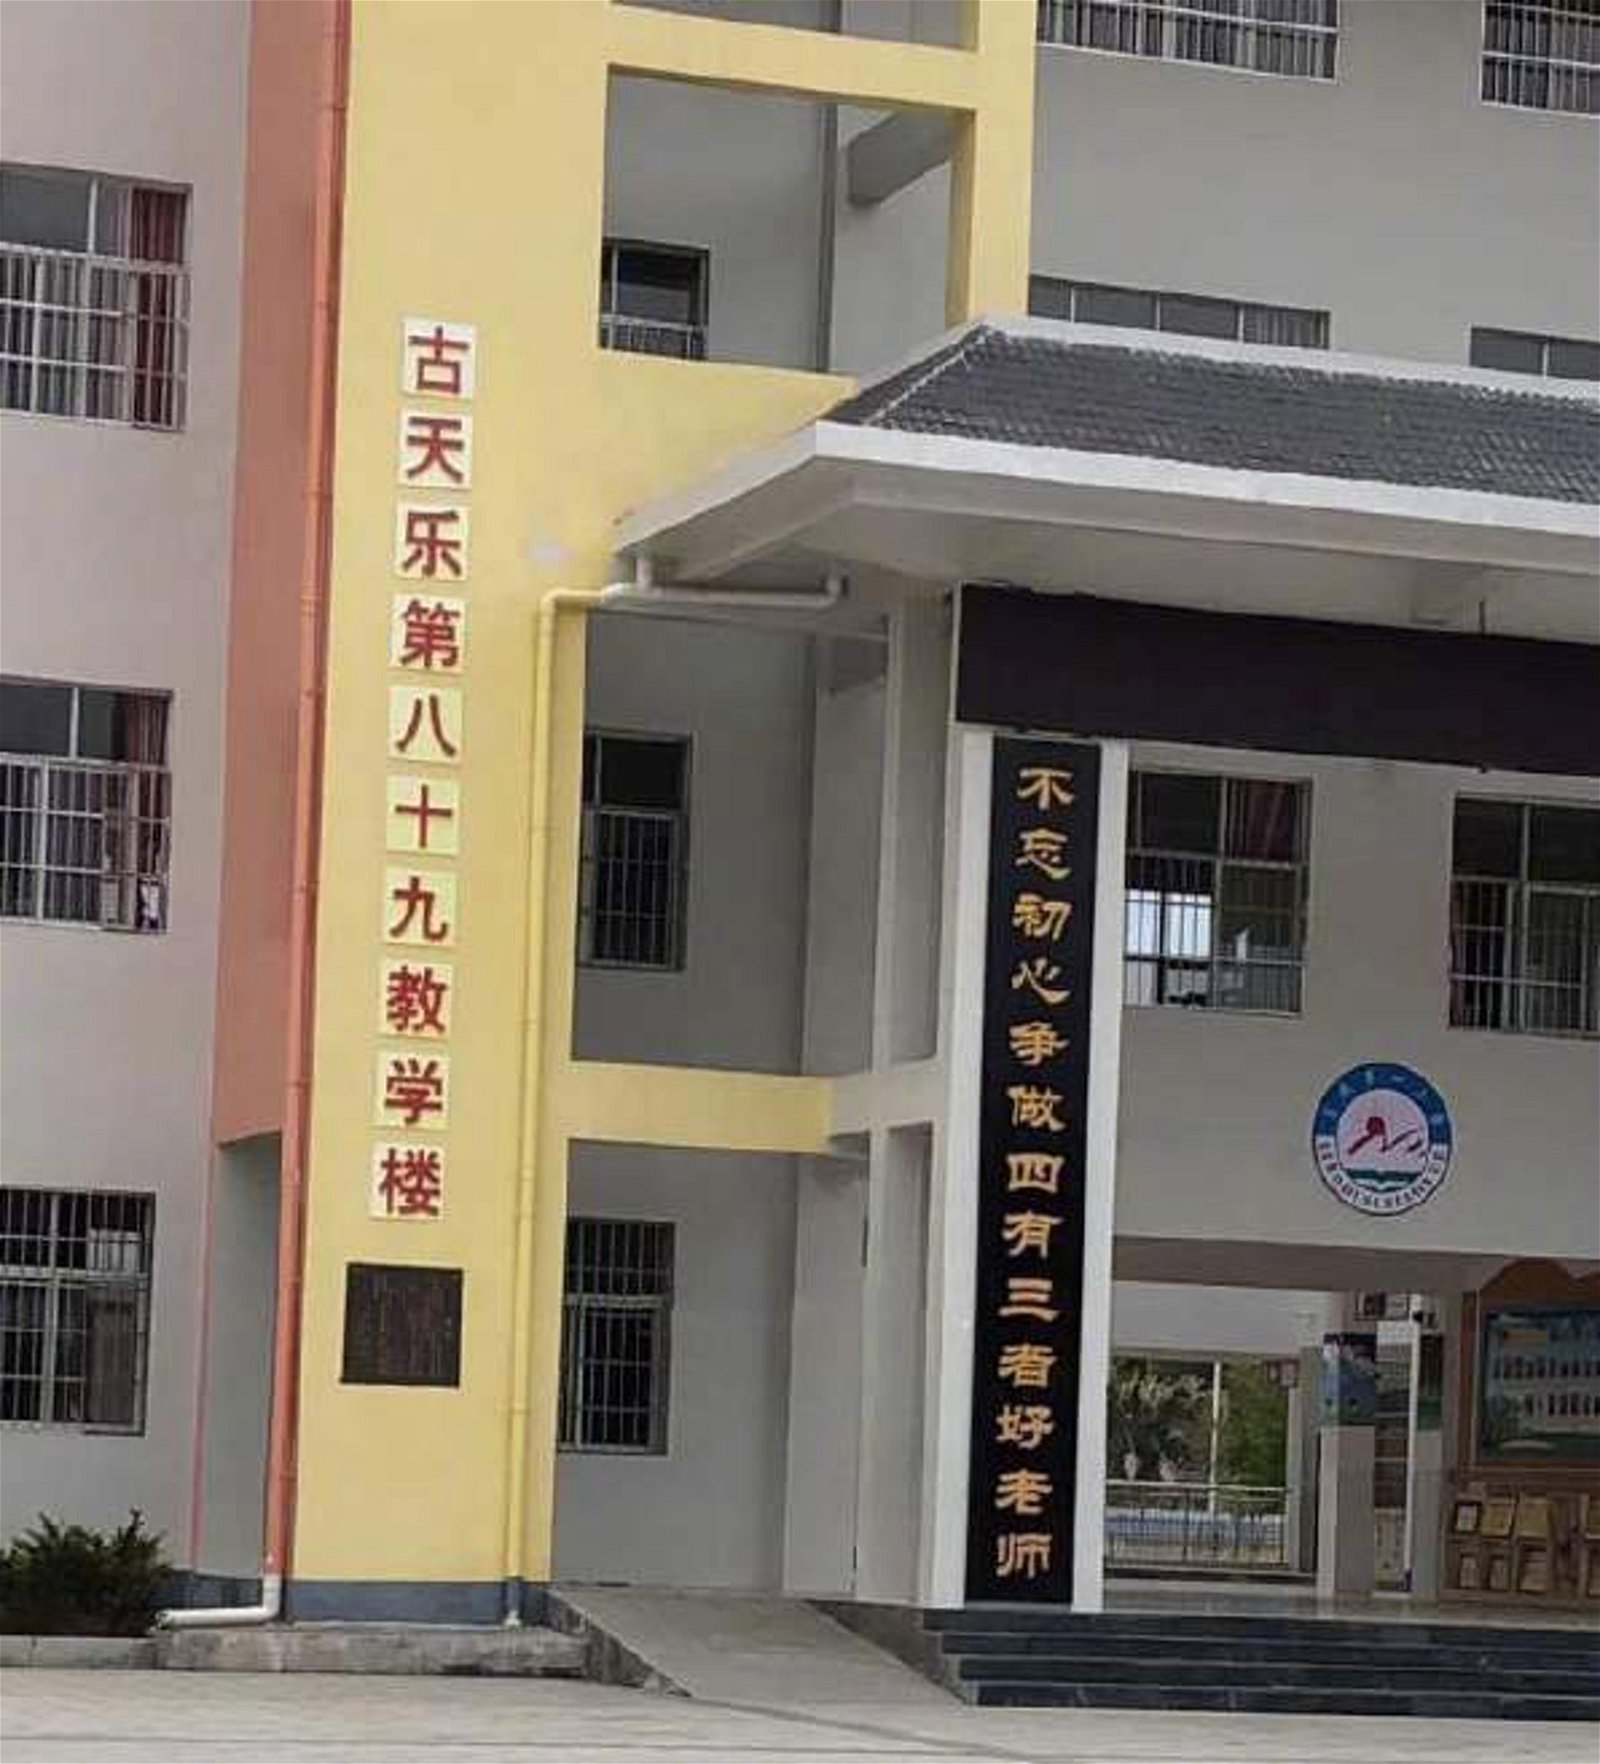 古天乐捐建的学校都用自己的名字命名。